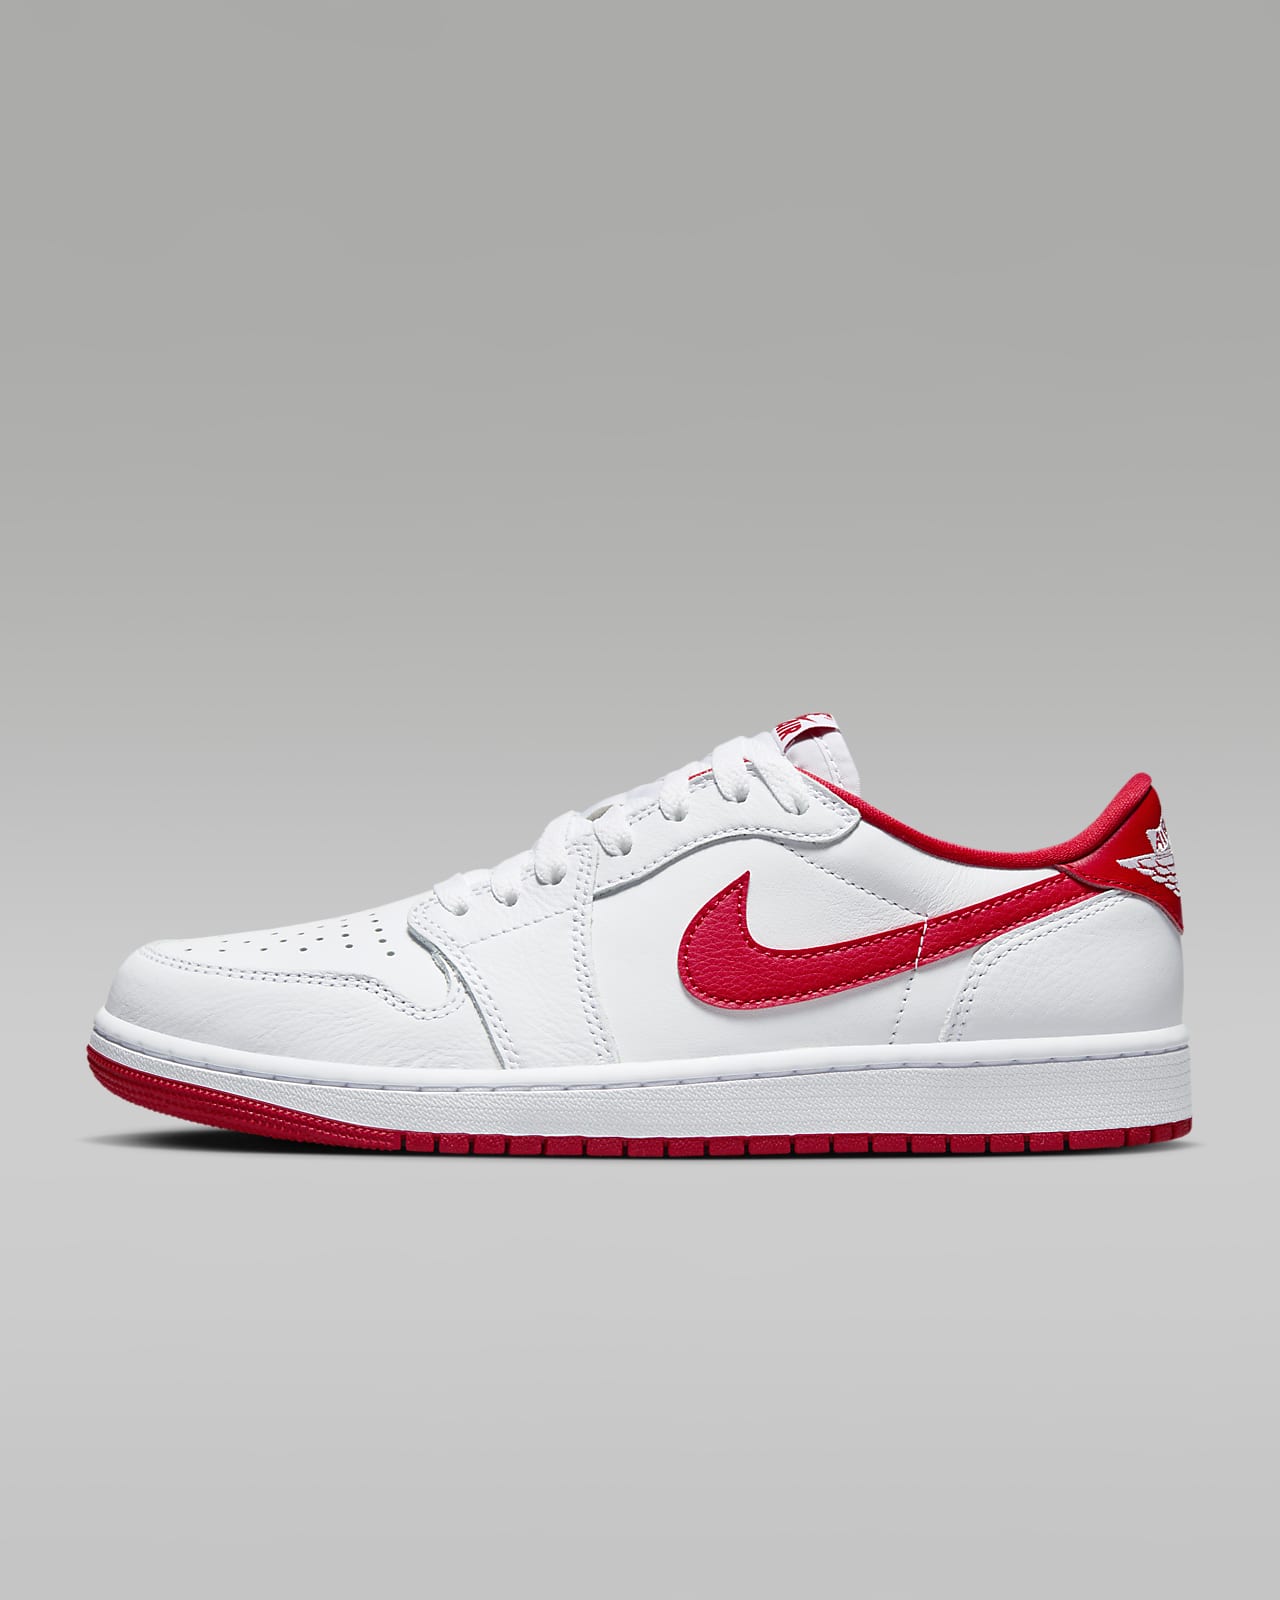 Air Jordan 1 Low OG "White/Red" Men's Shoes